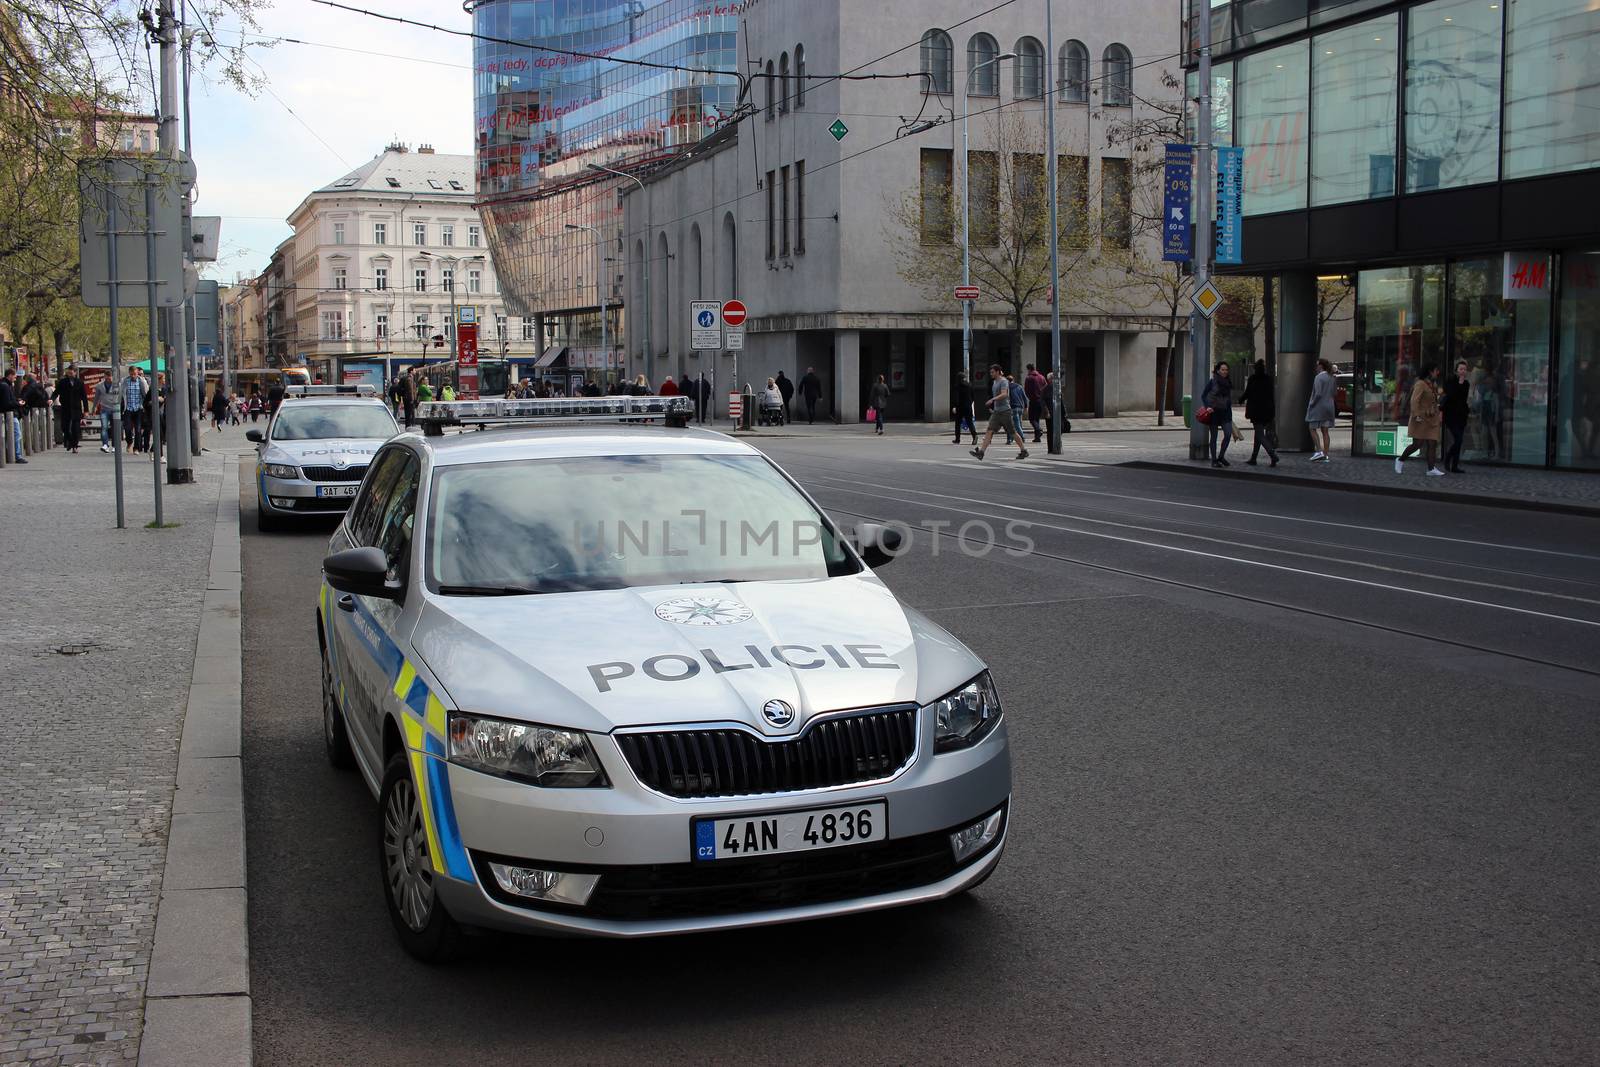 Skoda Octavia Police Cars Parked in Prague by bensib